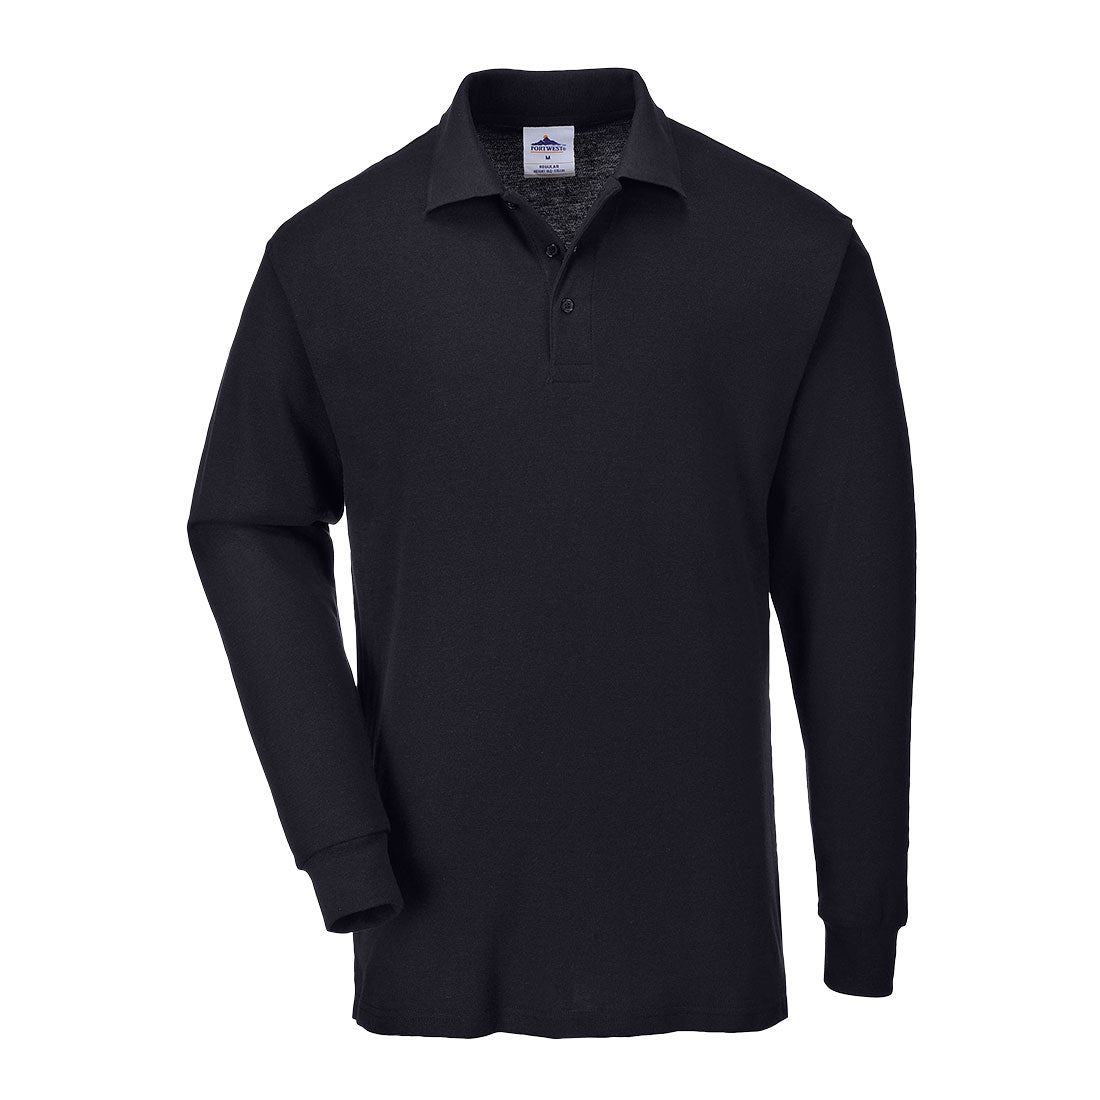 Genoa Long Sleeved Polo Shirt - B212 Black front